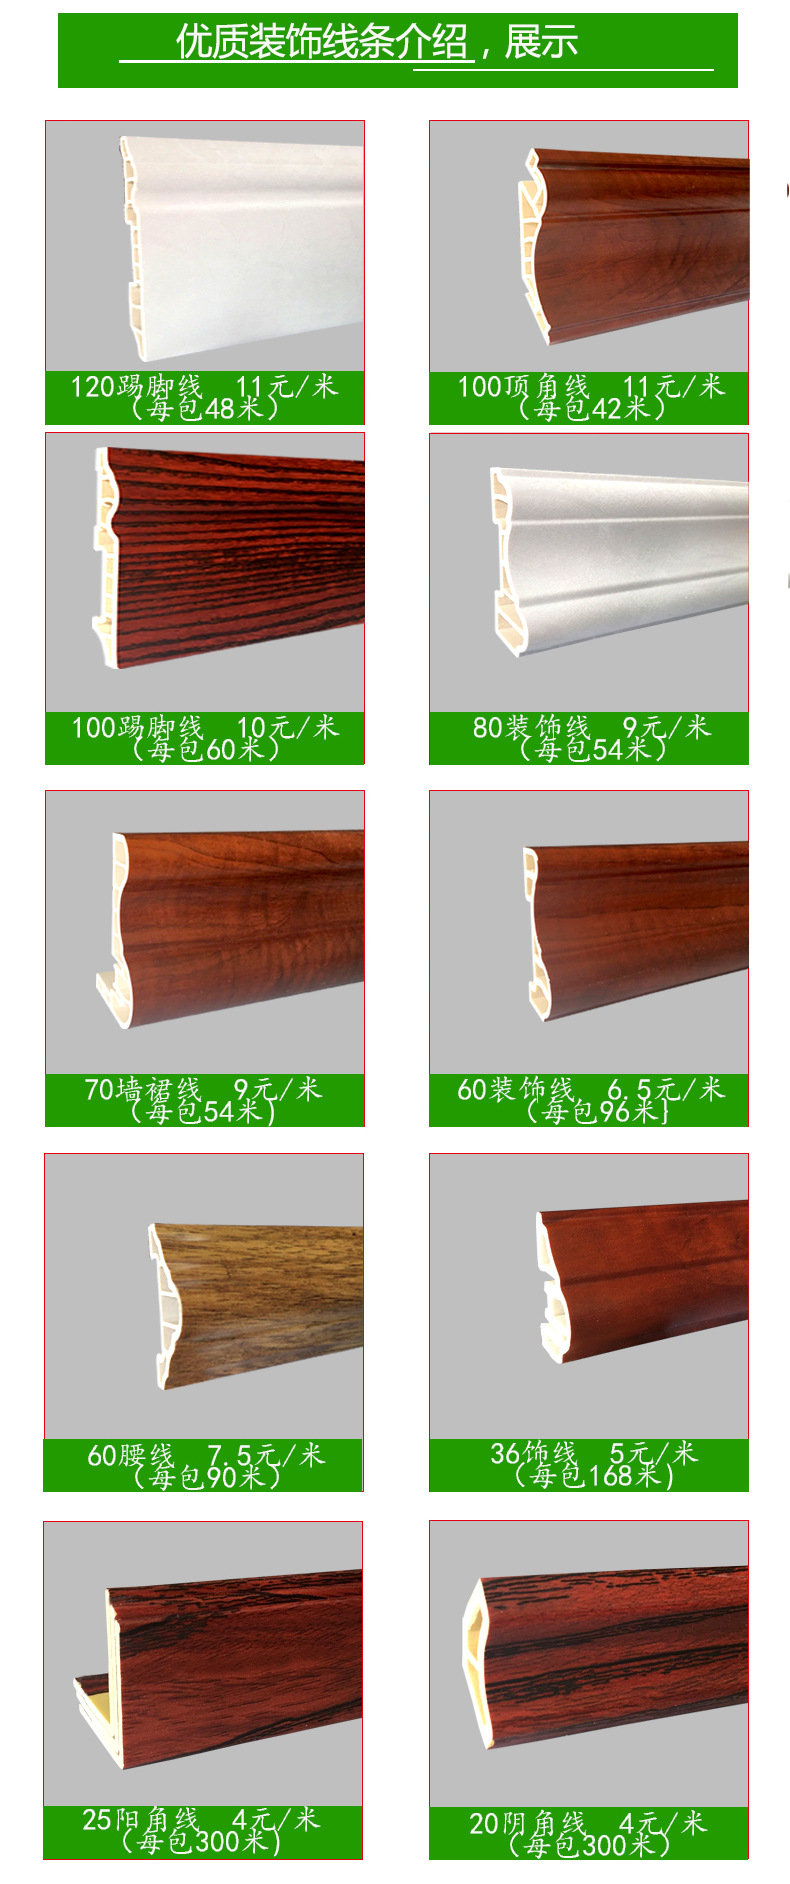 厂家直销明代竹木纤维集成墙板36边线 护墙板配套线条 装饰线示例图8